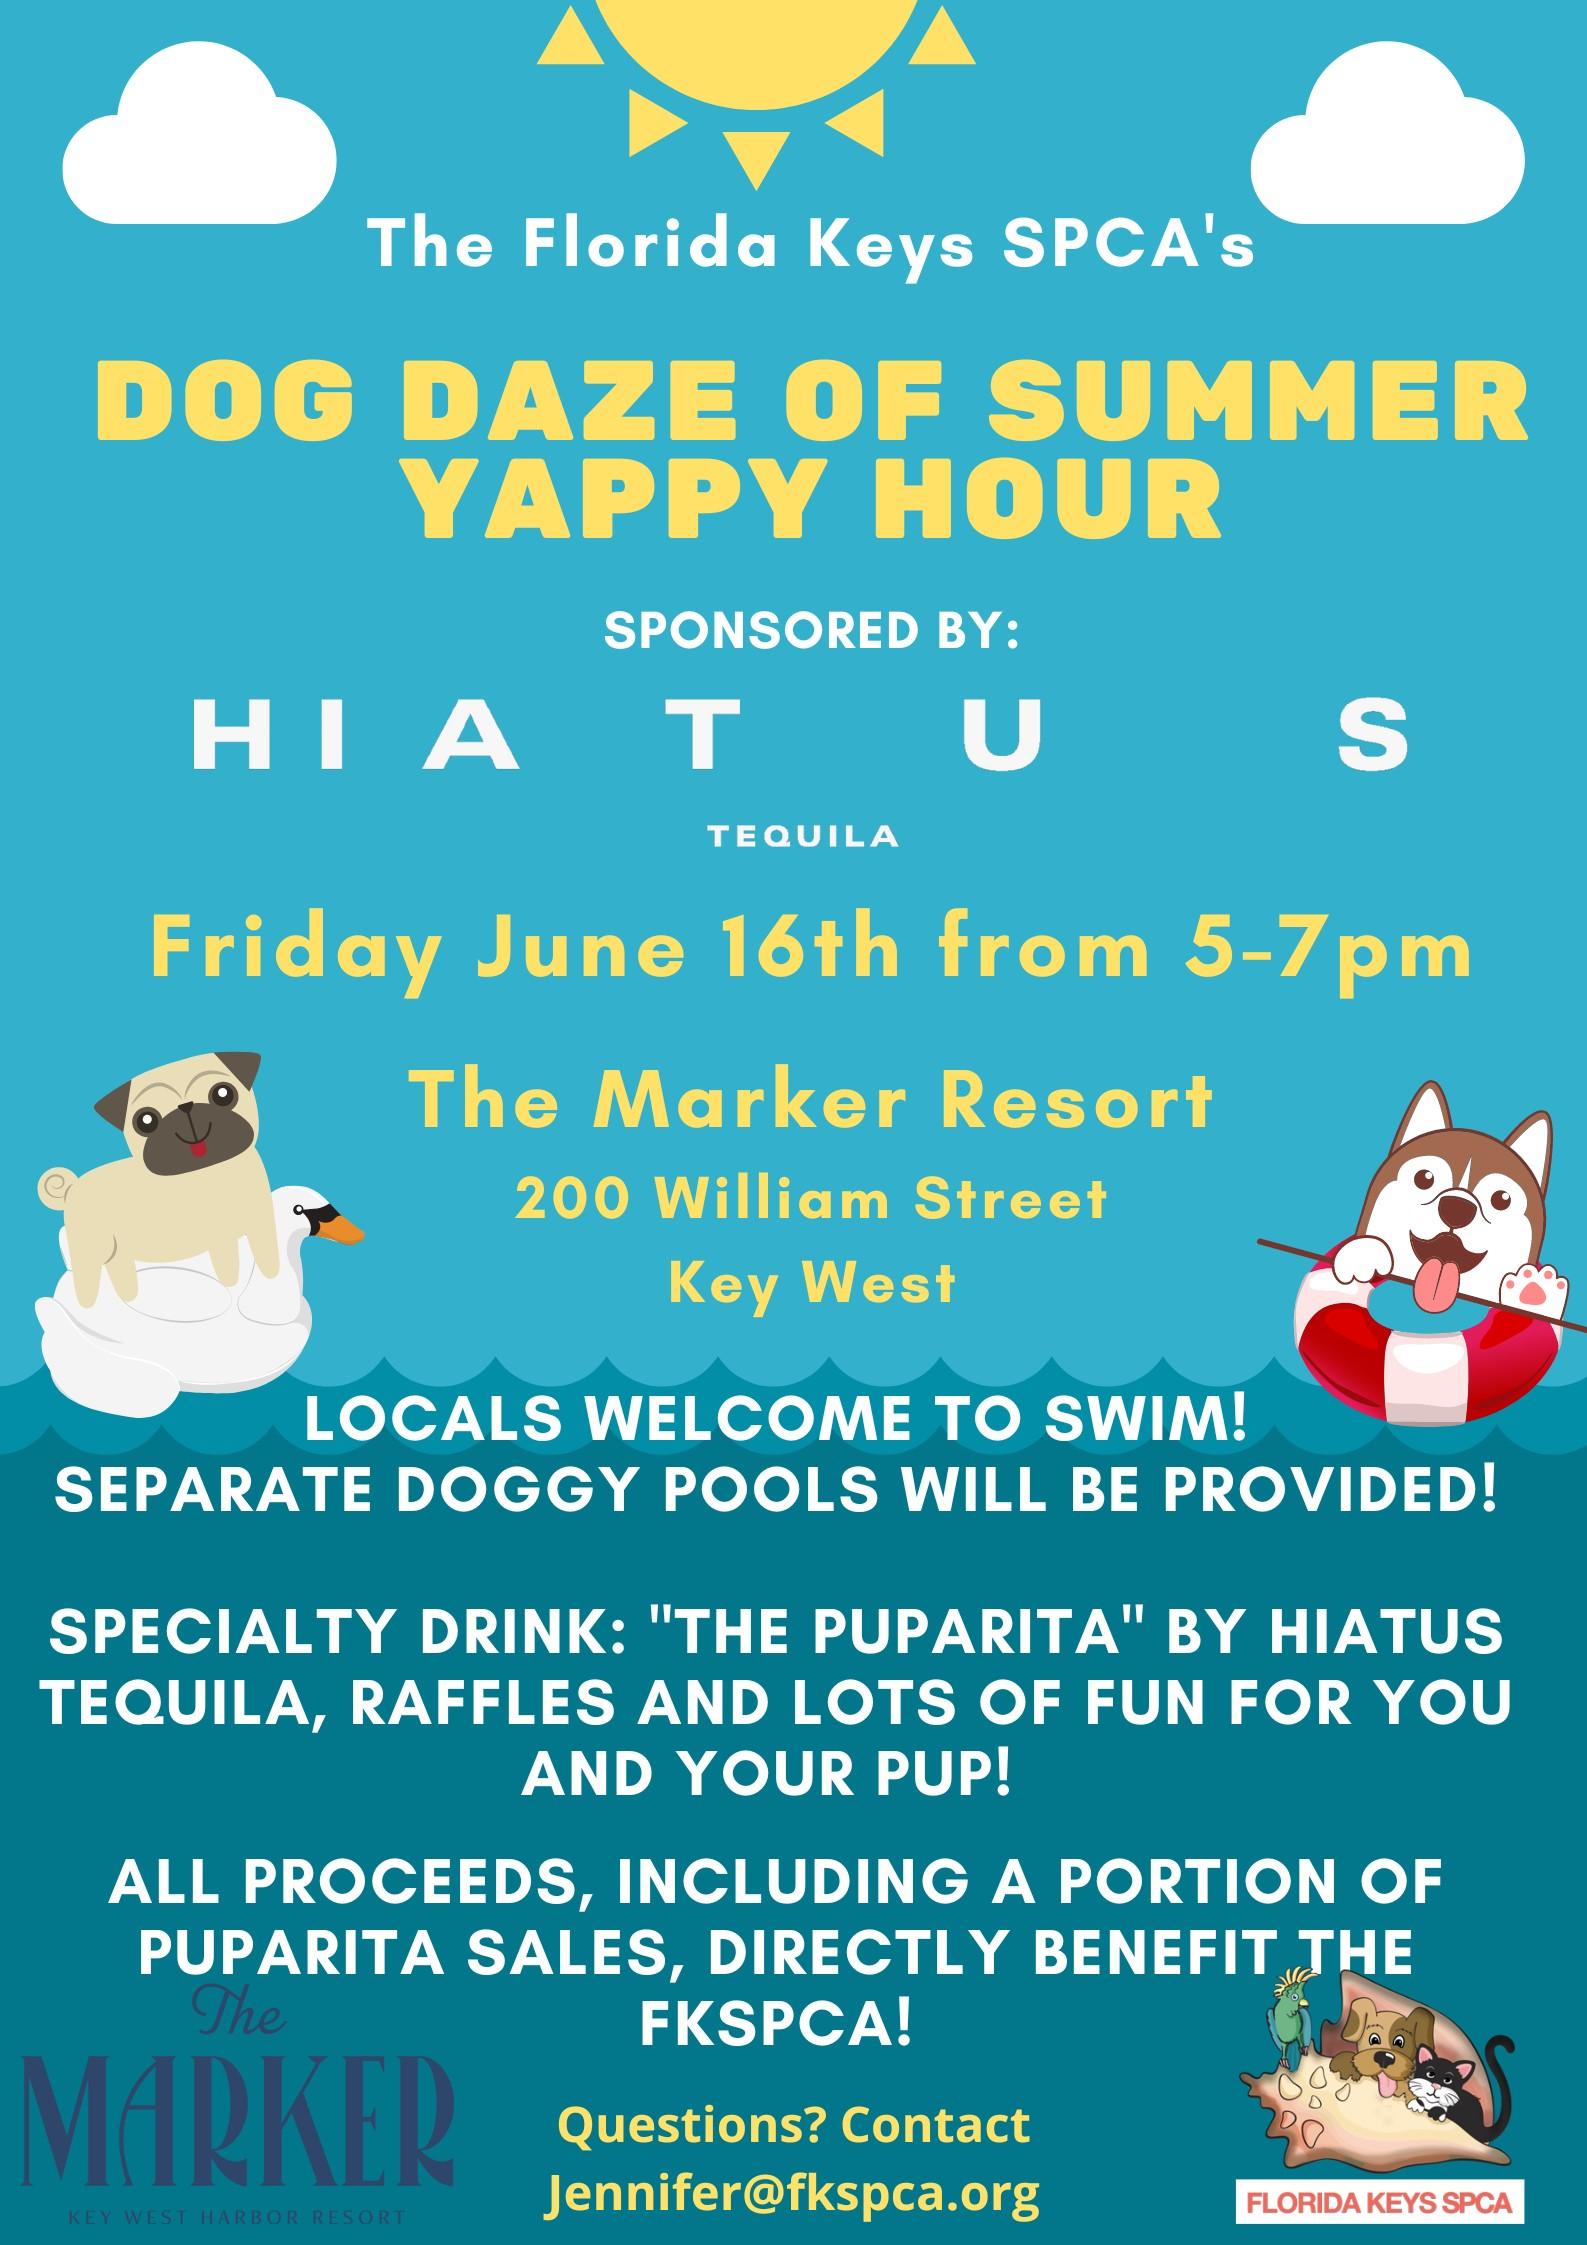 Dog Daze of Summer Yappy Hour at The Marker Resort